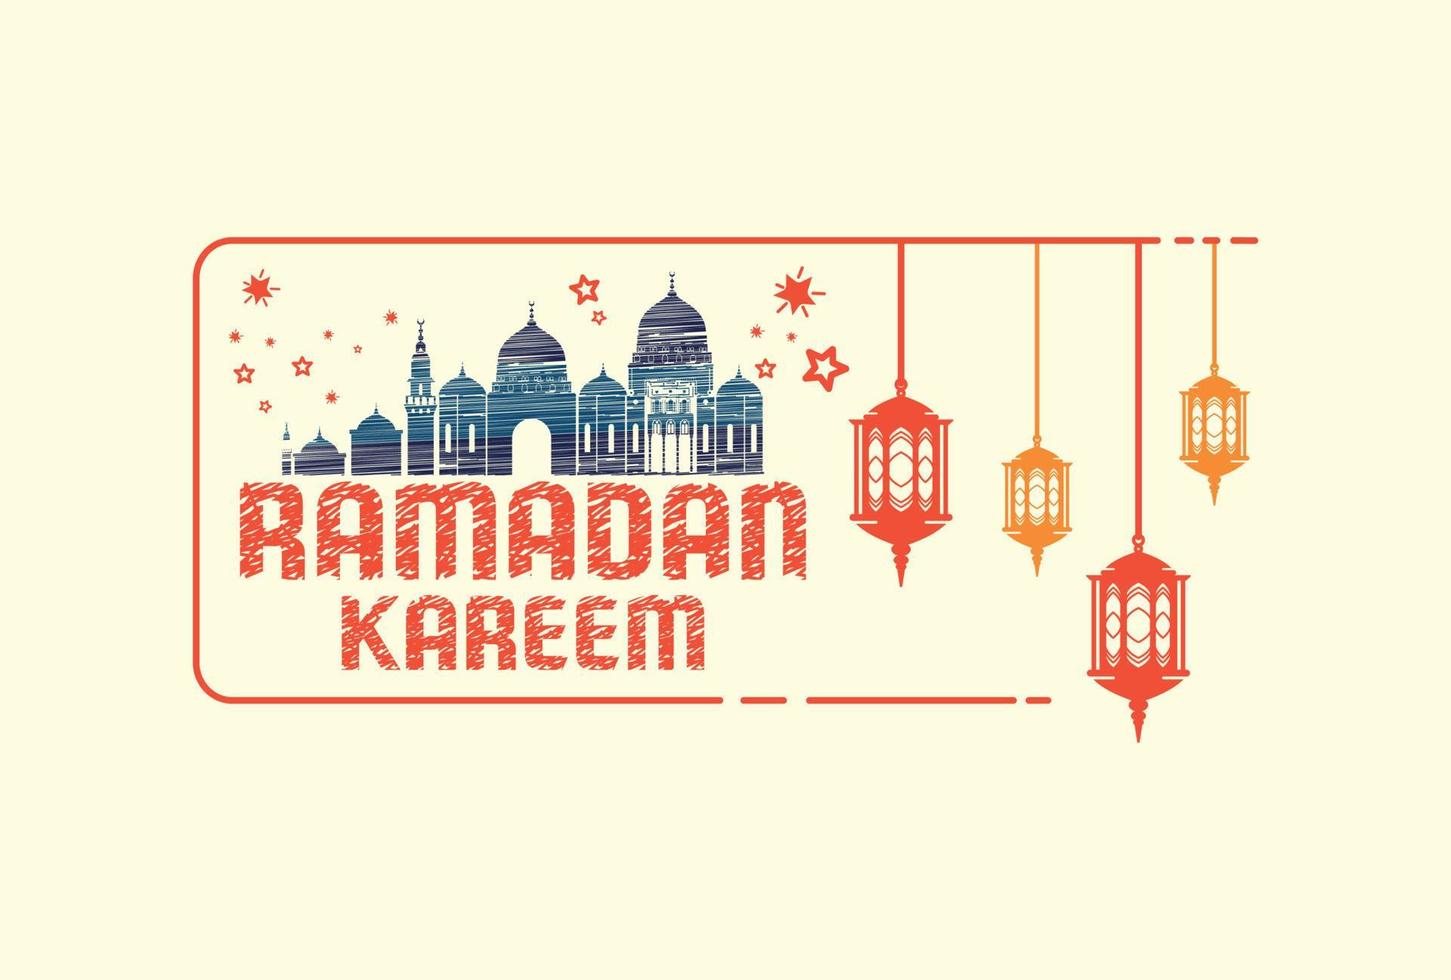 saluto Ramadan kareem con islamico ornamenti. può essere Usato per in linea e stampato spedizione necessità. vettore illustrazione